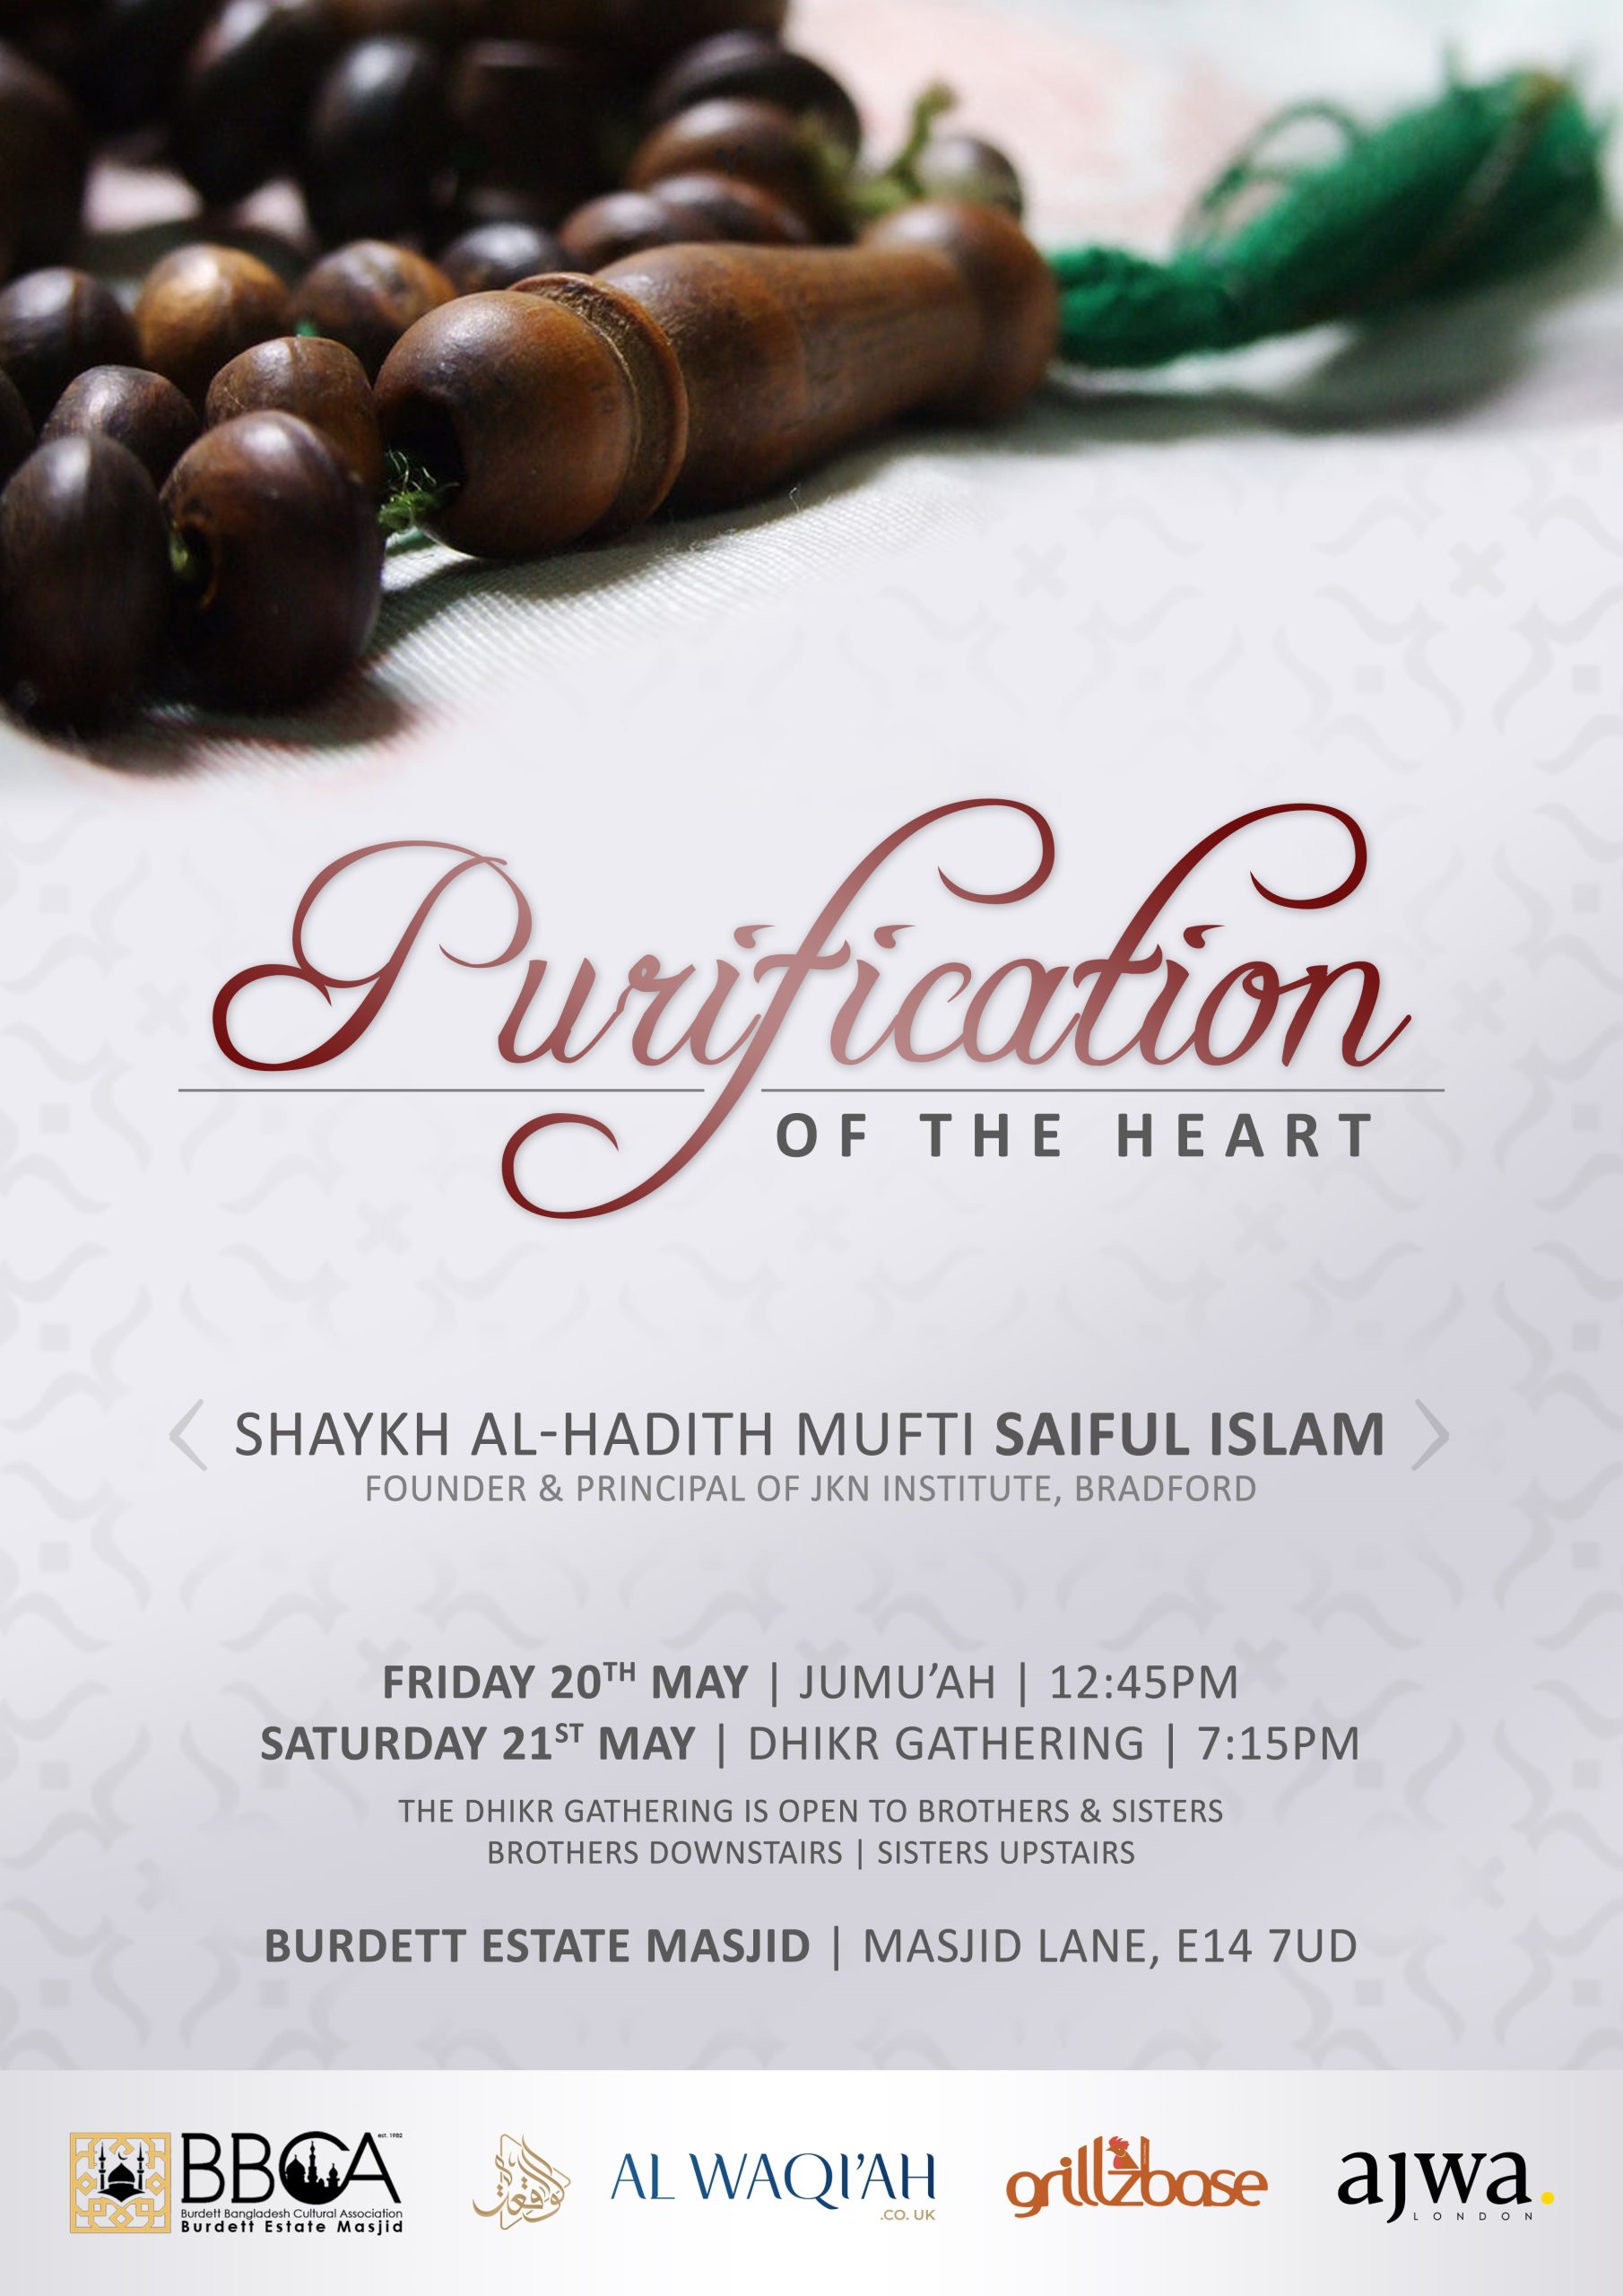 PURIFICATION OF THE HEART | Shaykh Mufti Saiful Islam